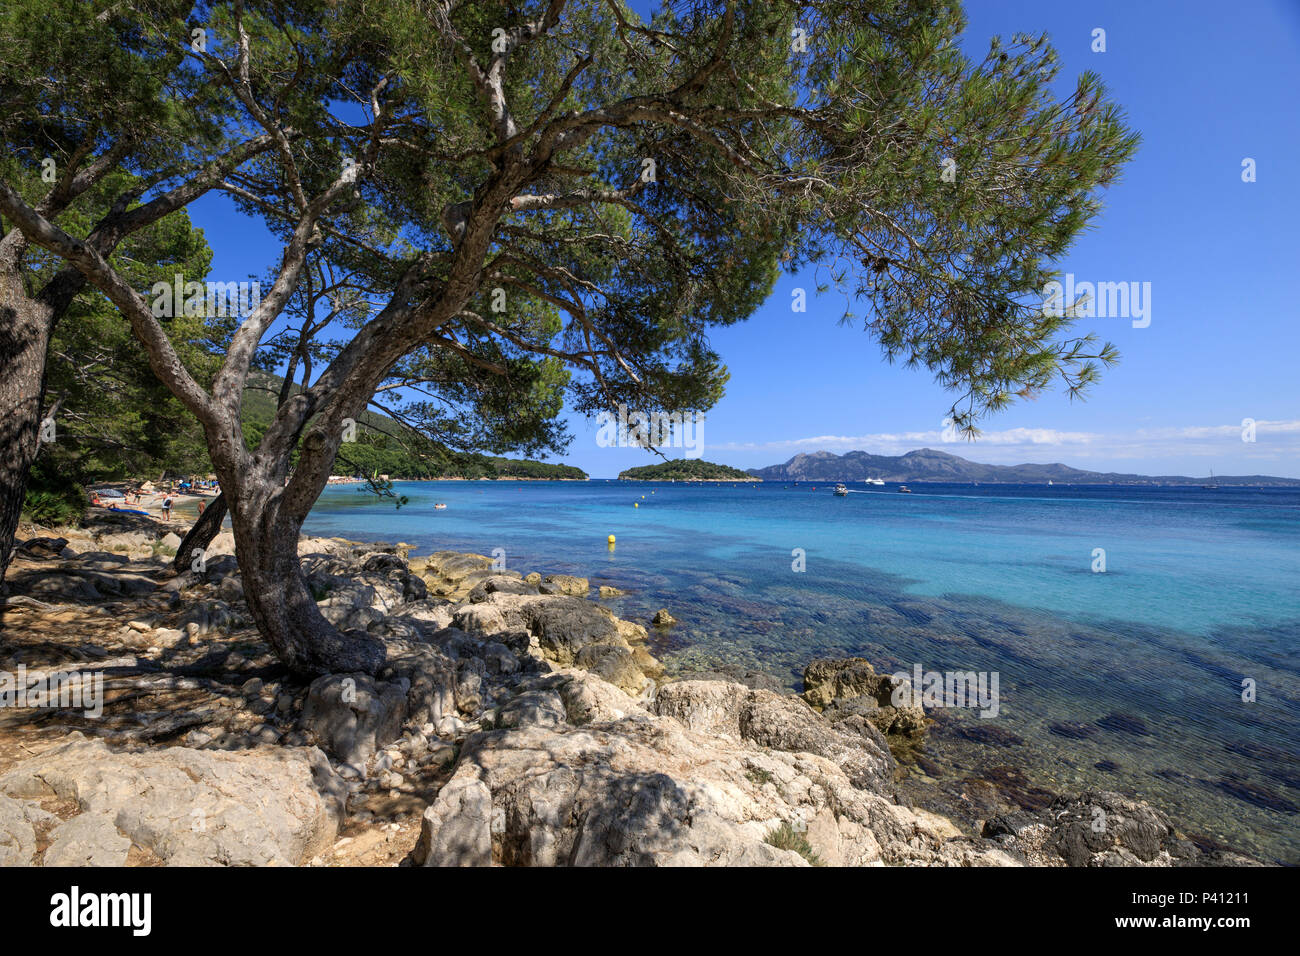 Formentor sauber, Wasser, Meer, Marine und Pinien, Serra de Tramuntana, Mallorca Spanien Welterbe Stockfoto